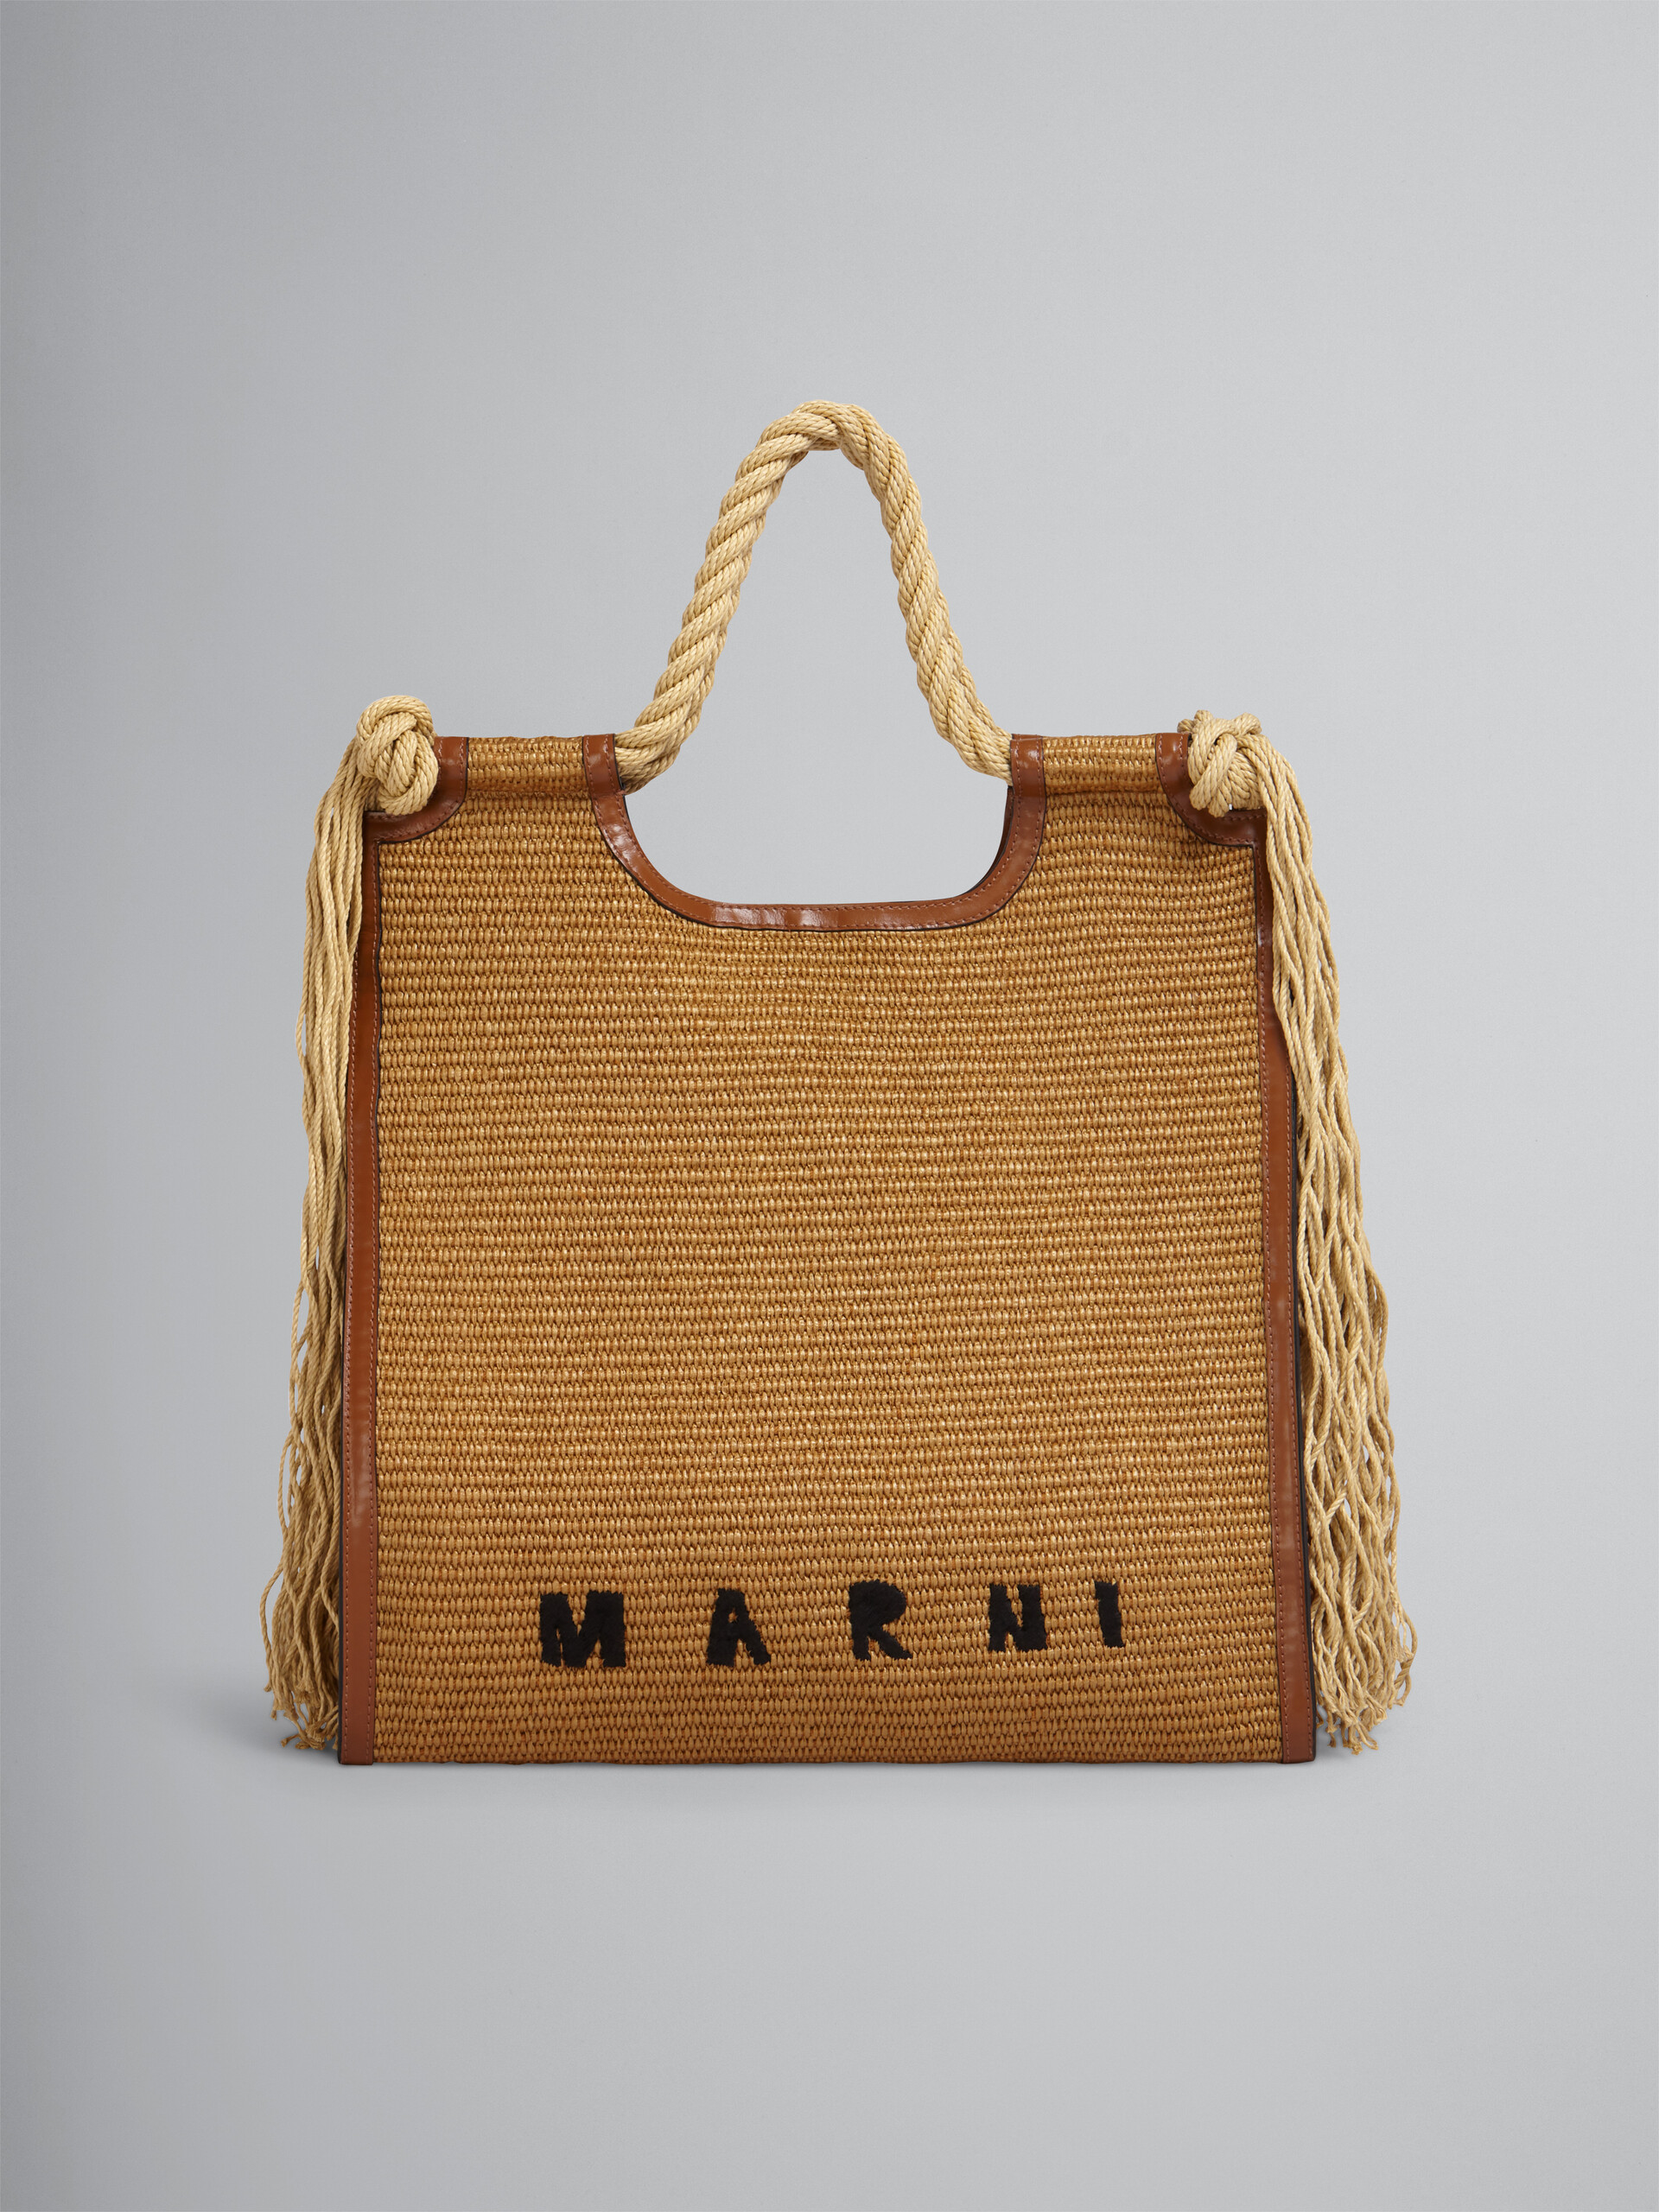 Sommertasche MARCEL aus einem Material in Bast-Optik, mit braunem Leder und Seilgriffen - Handtaschen - Image 1